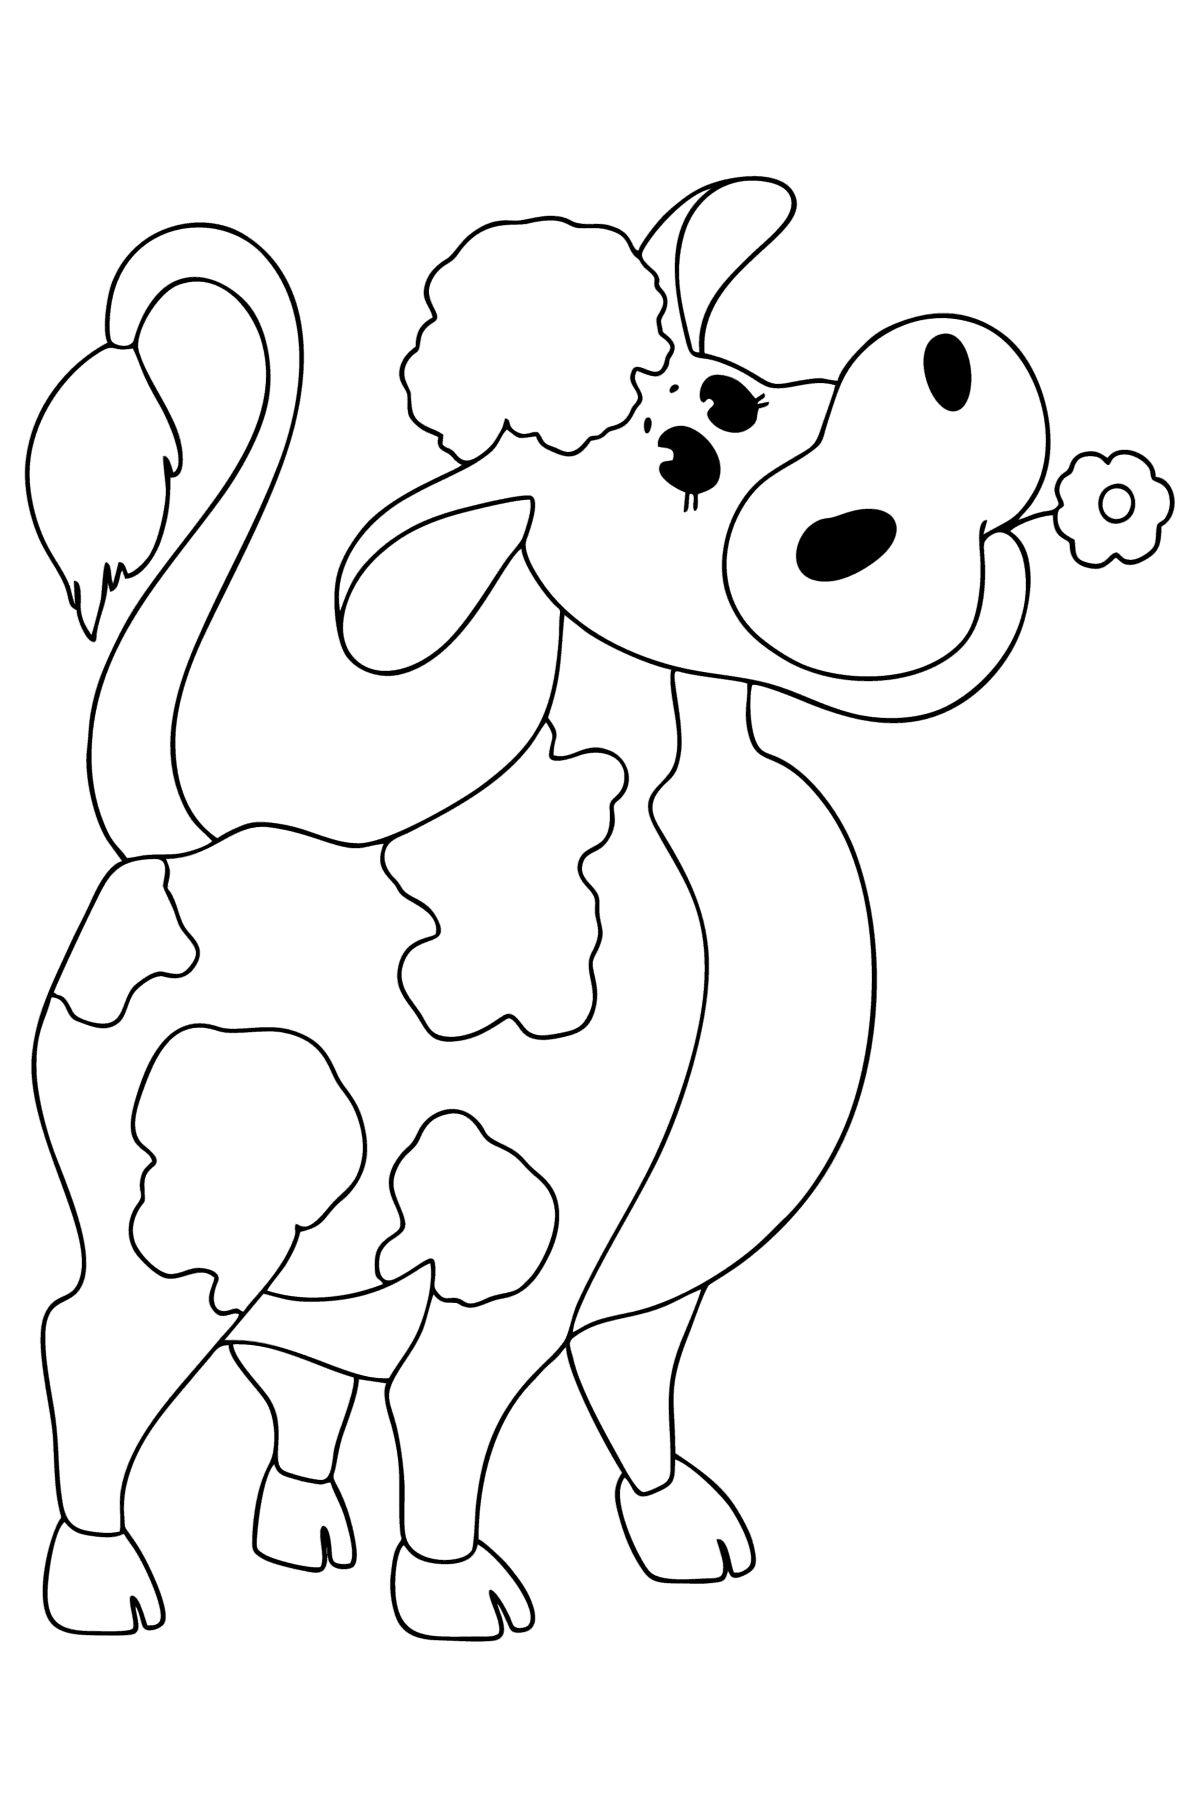 Kleurplaat Baby koe - kleurplaten voor kinderen